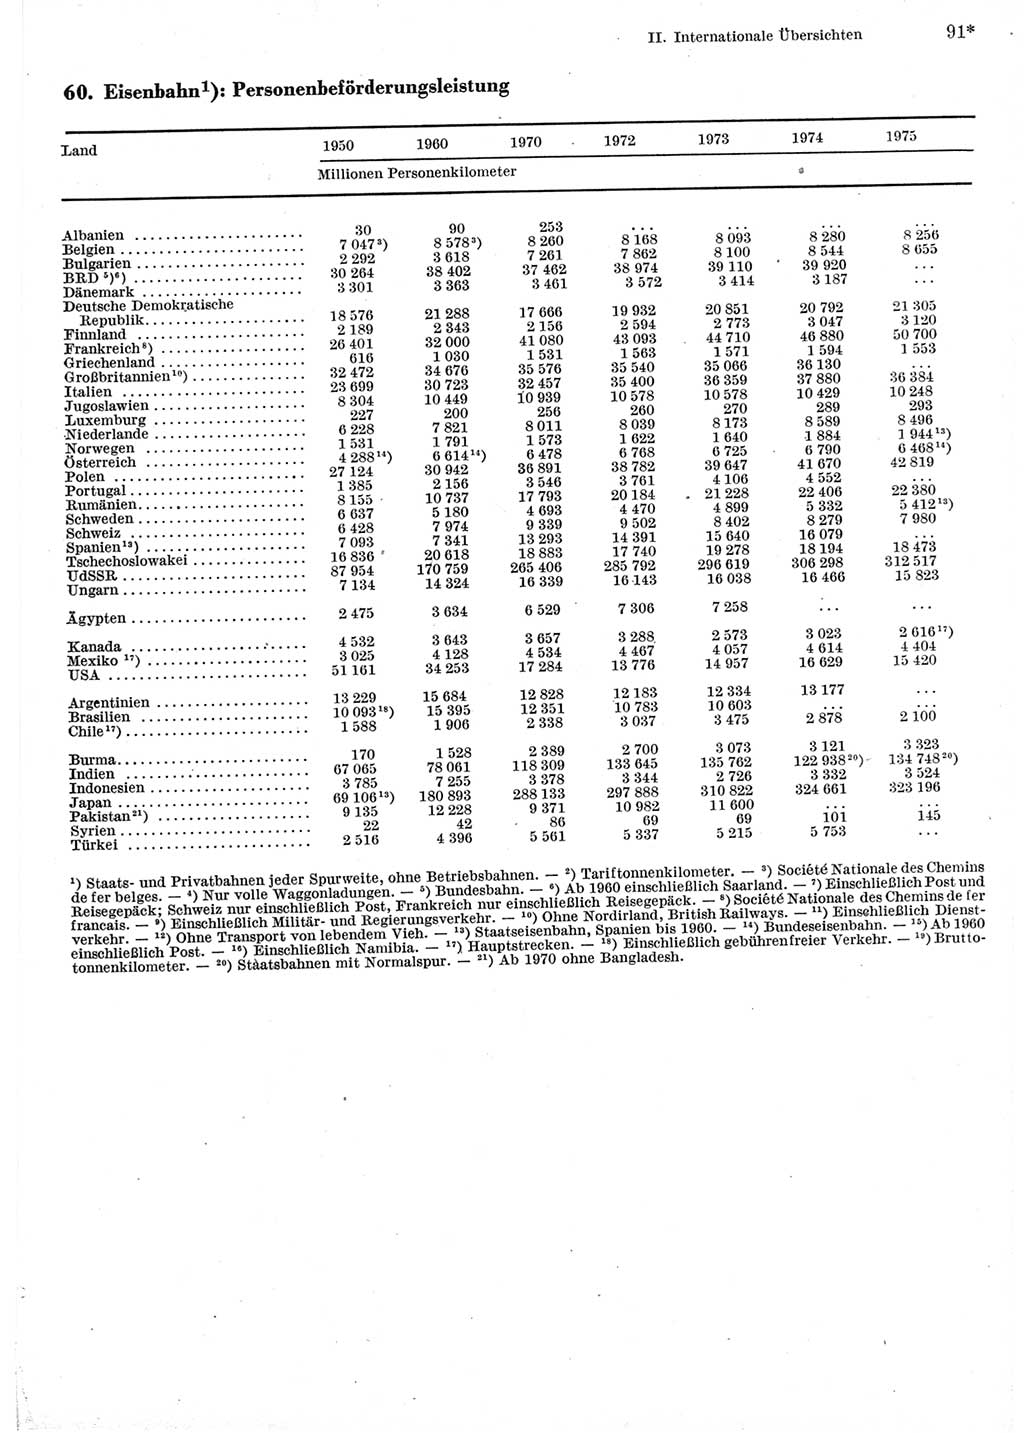 Statistisches Jahrbuch der Deutschen Demokratischen Republik (DDR) 1977, Seite 91 (Stat. Jb. DDR 1977, S. 91)